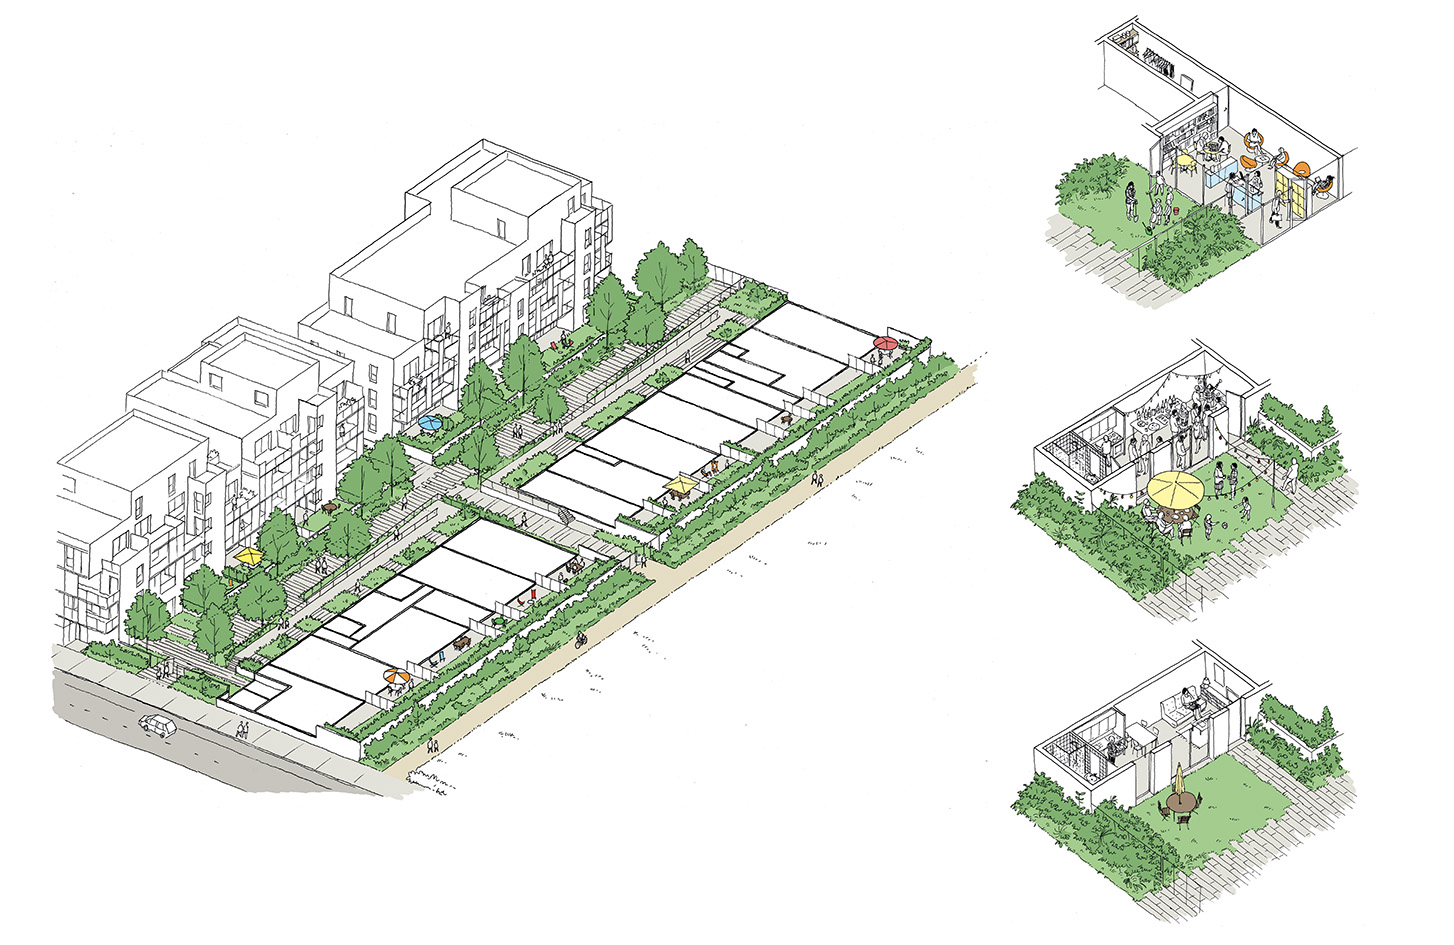 Concours pour un projet de logements à Villeurbanne - Rue Royale architectes / Siz'ix architectes - 2016